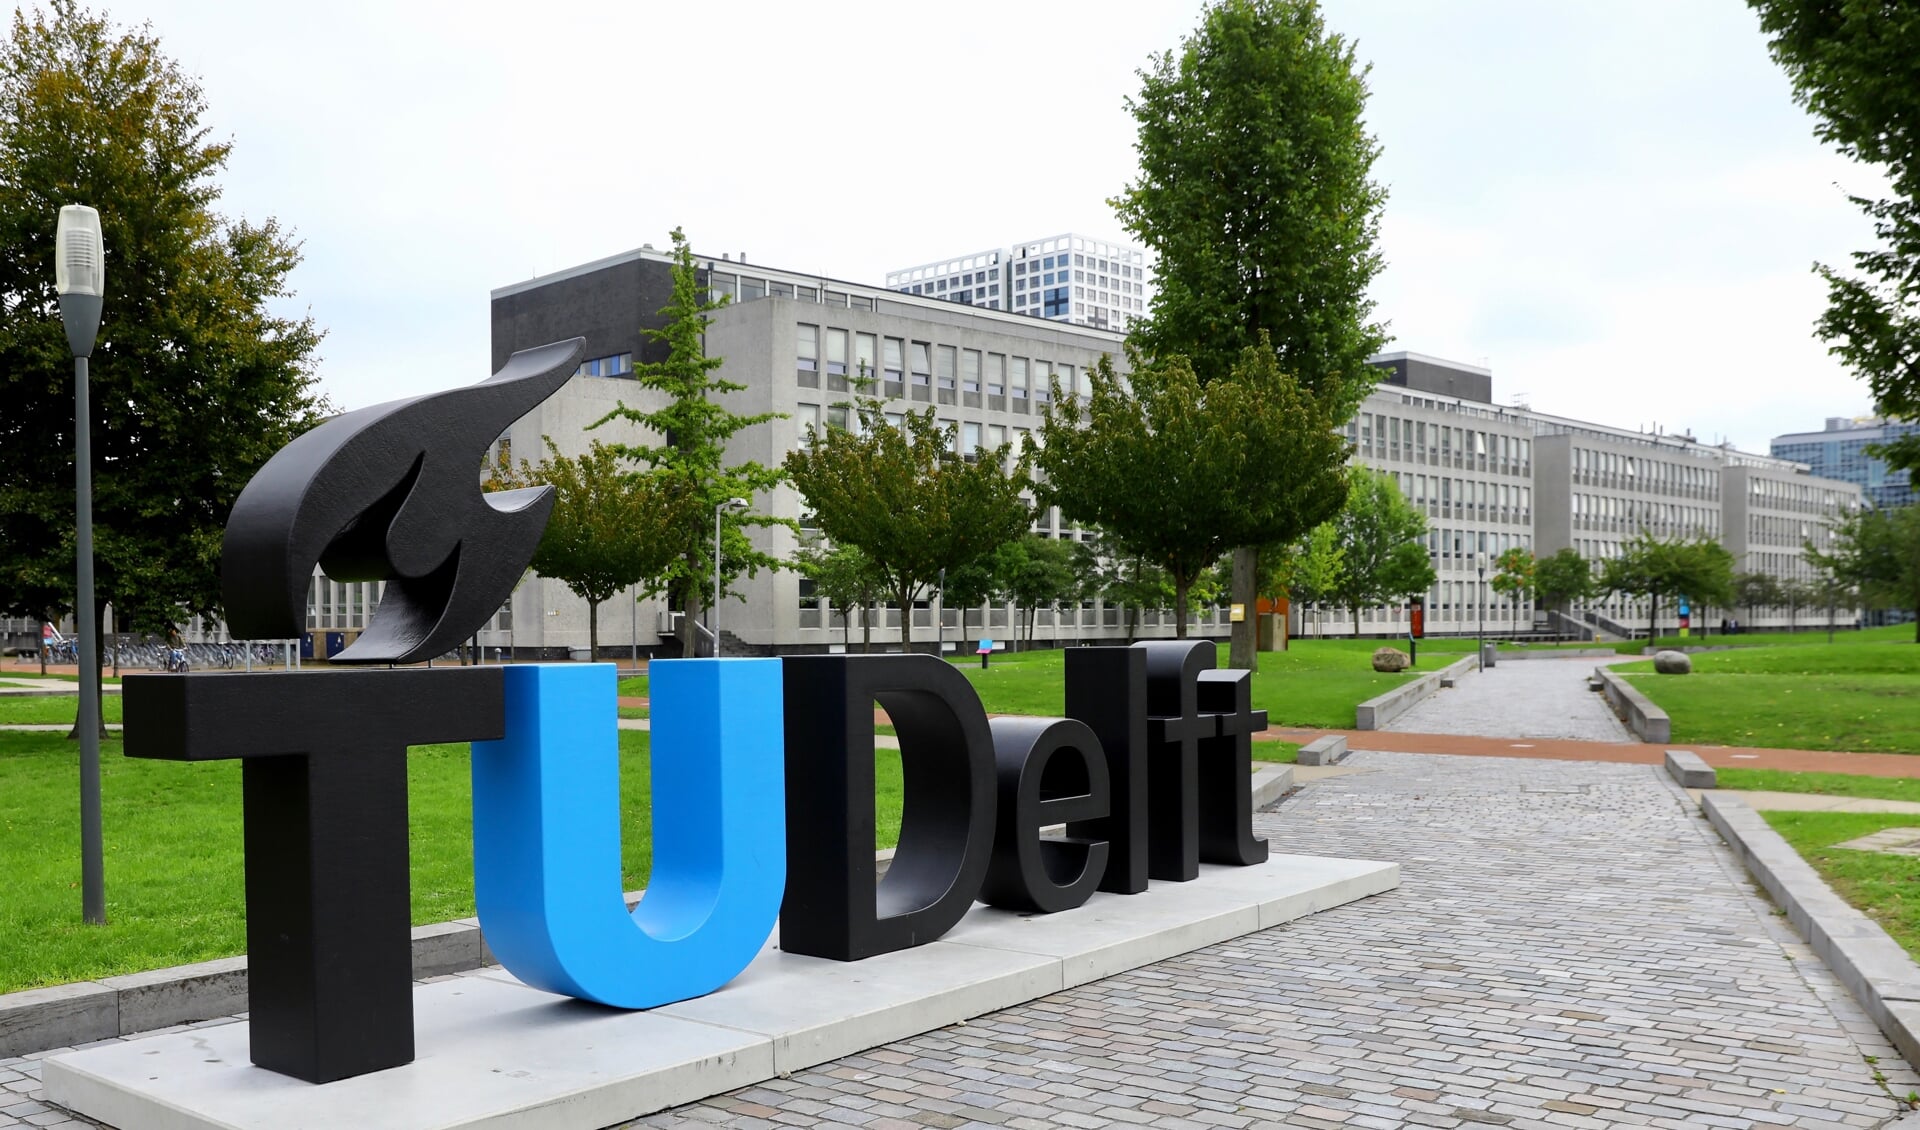 De TU wil op termijn naast de vestiging in Delft, ook een vestiging openen in Rotterdam. (Foto: Koos Bommelé)  